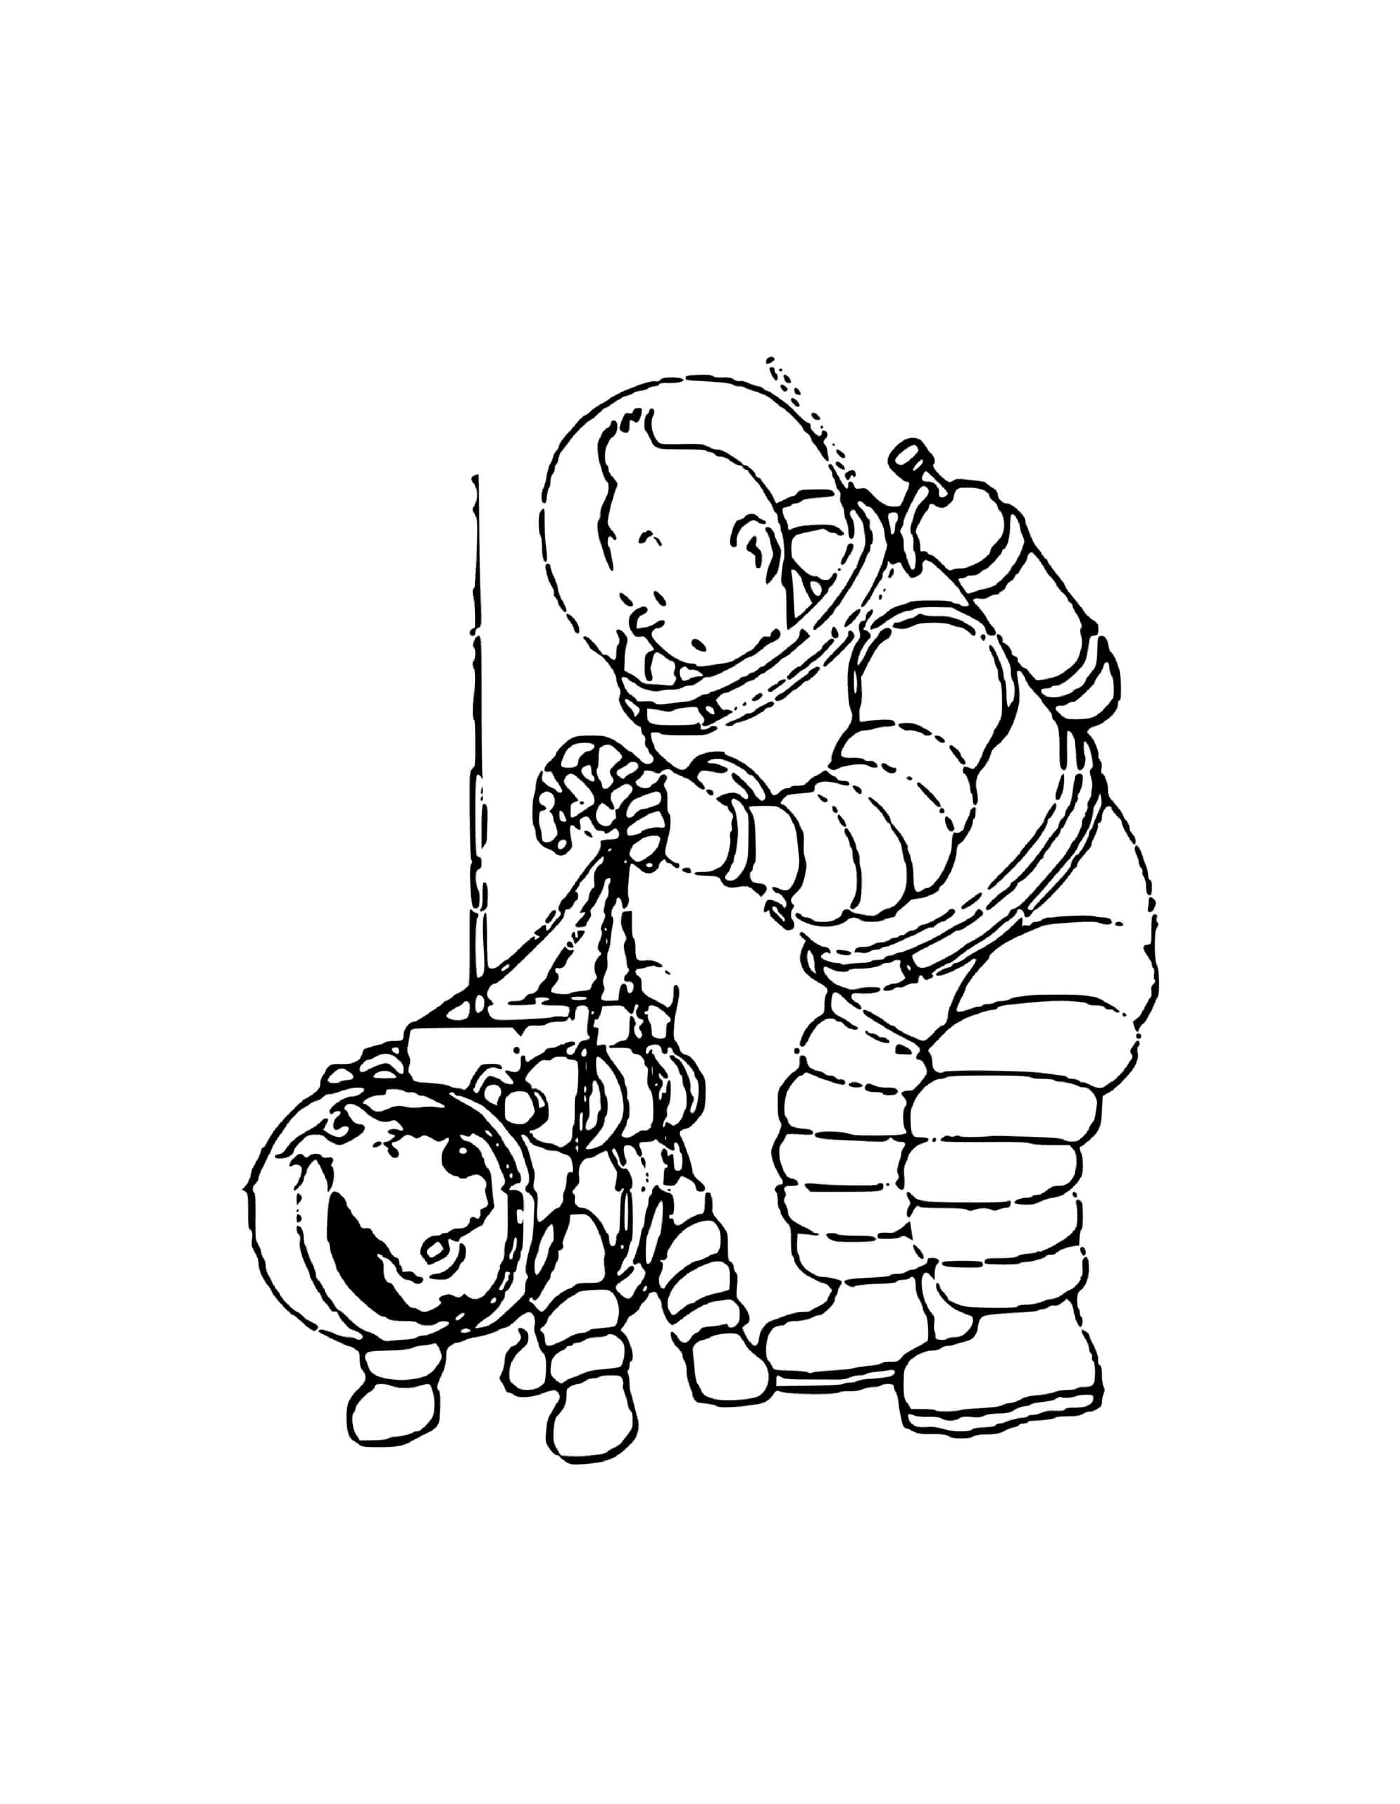  Astronautas Tintin e Milou 